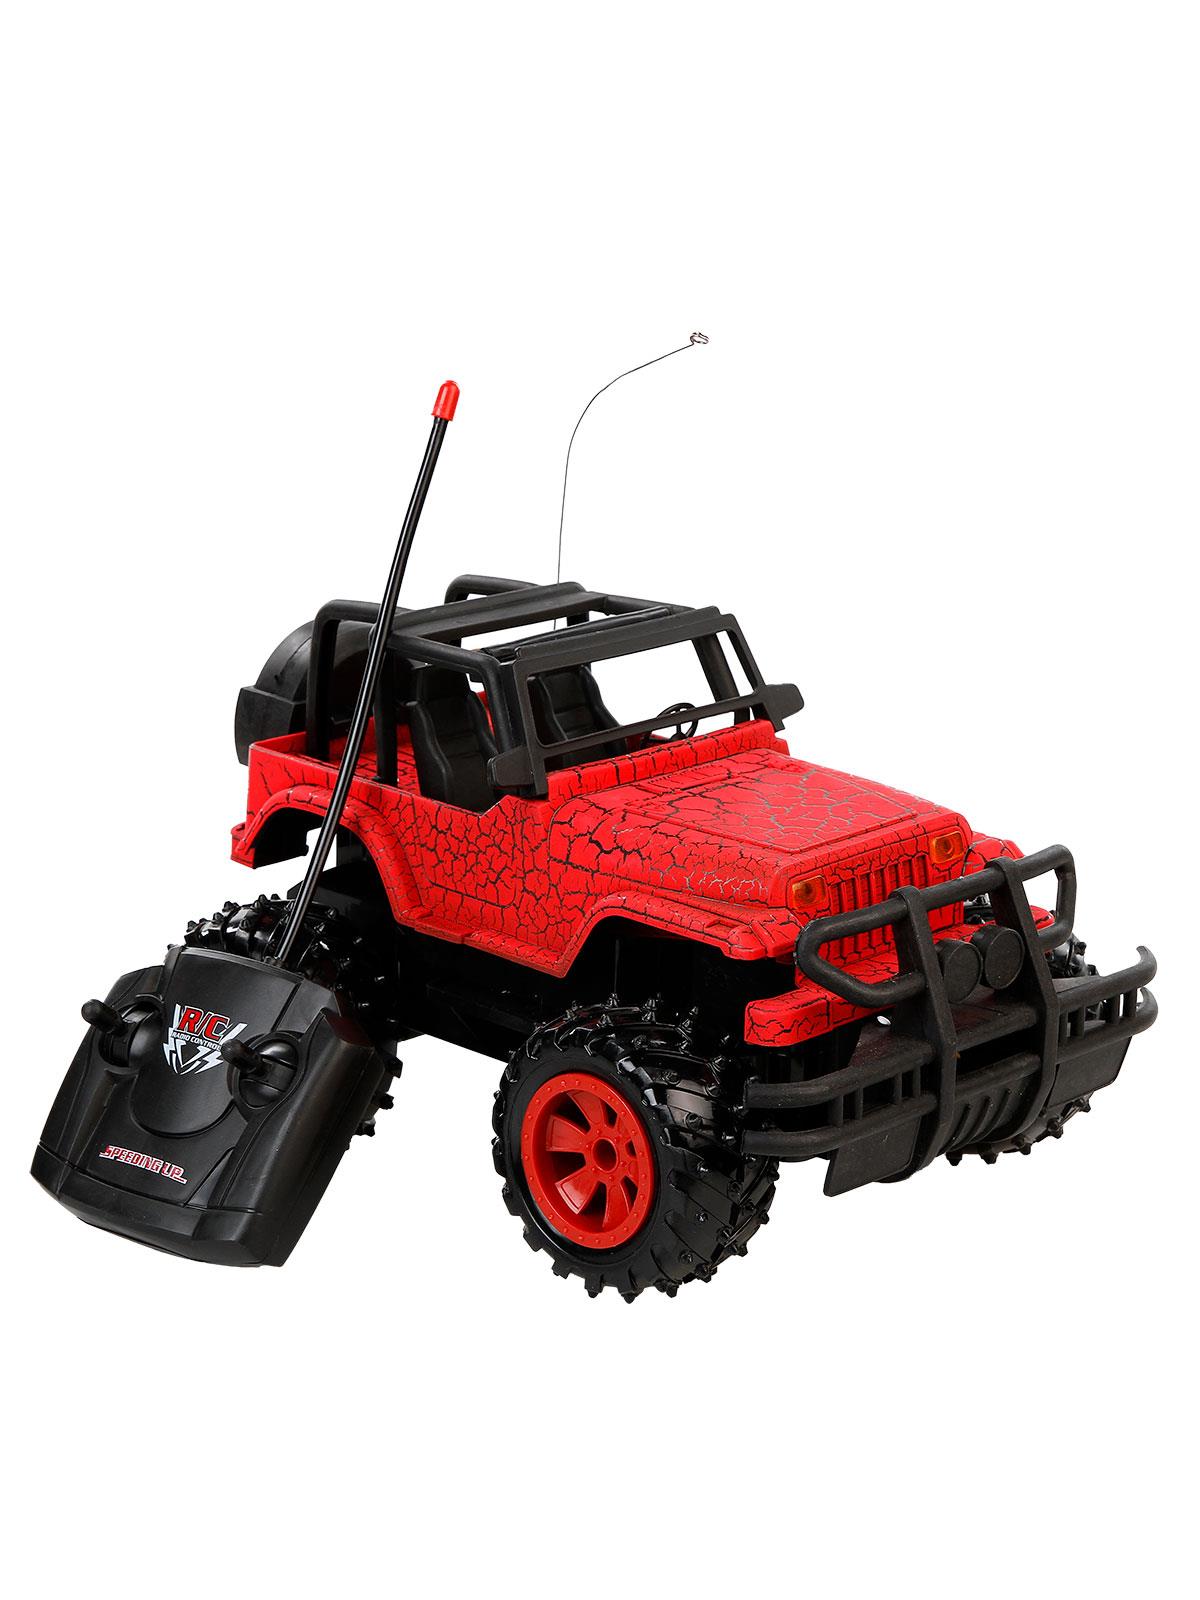 Can Oyuncak Uzaktan Kumandanlı Şarjlı Jeep Kırmızı